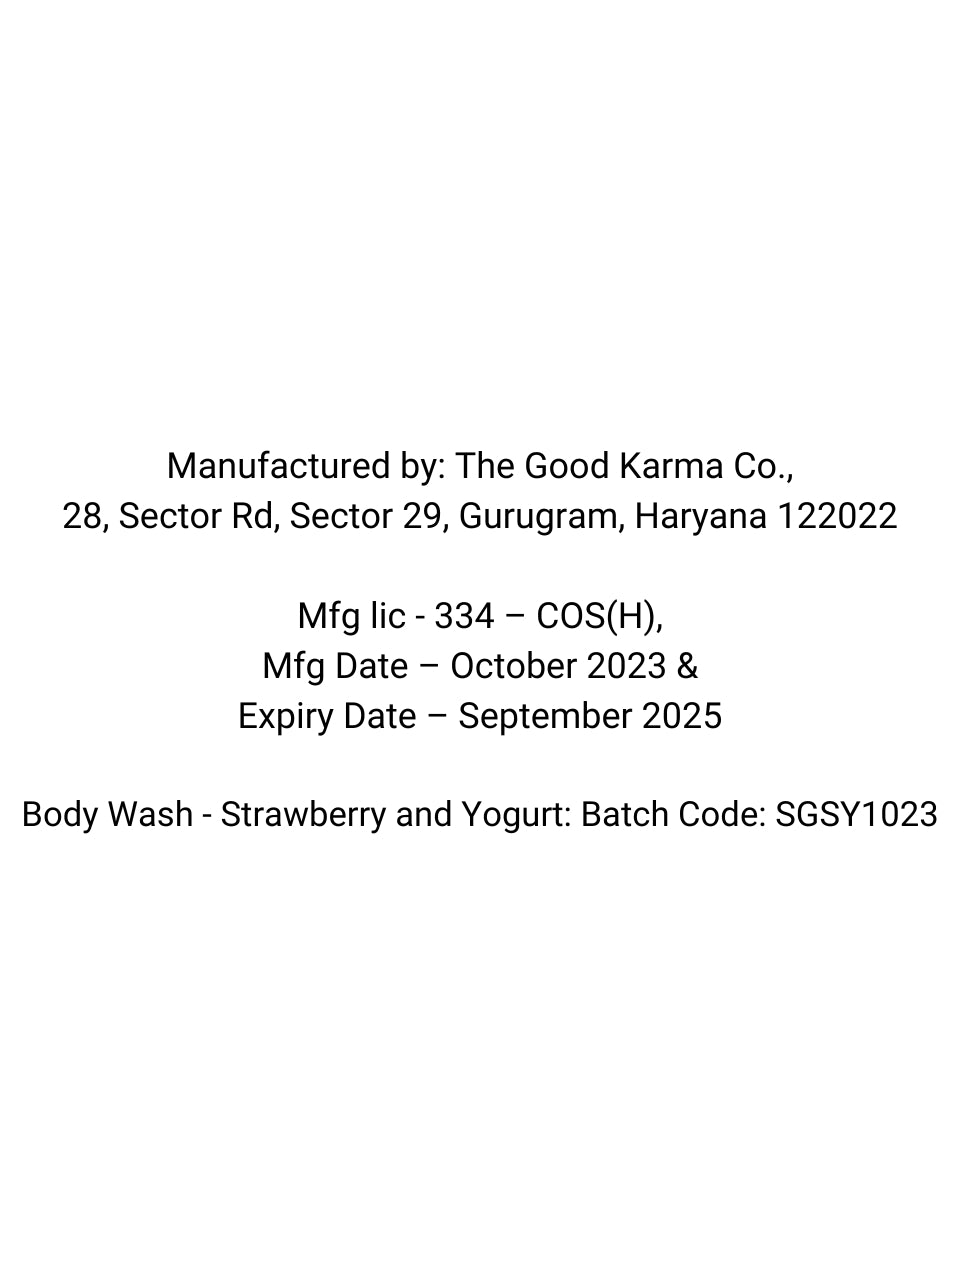 Body Wash - Strawberry and Yogurt  Pack of of 250mL & 1000mL refill